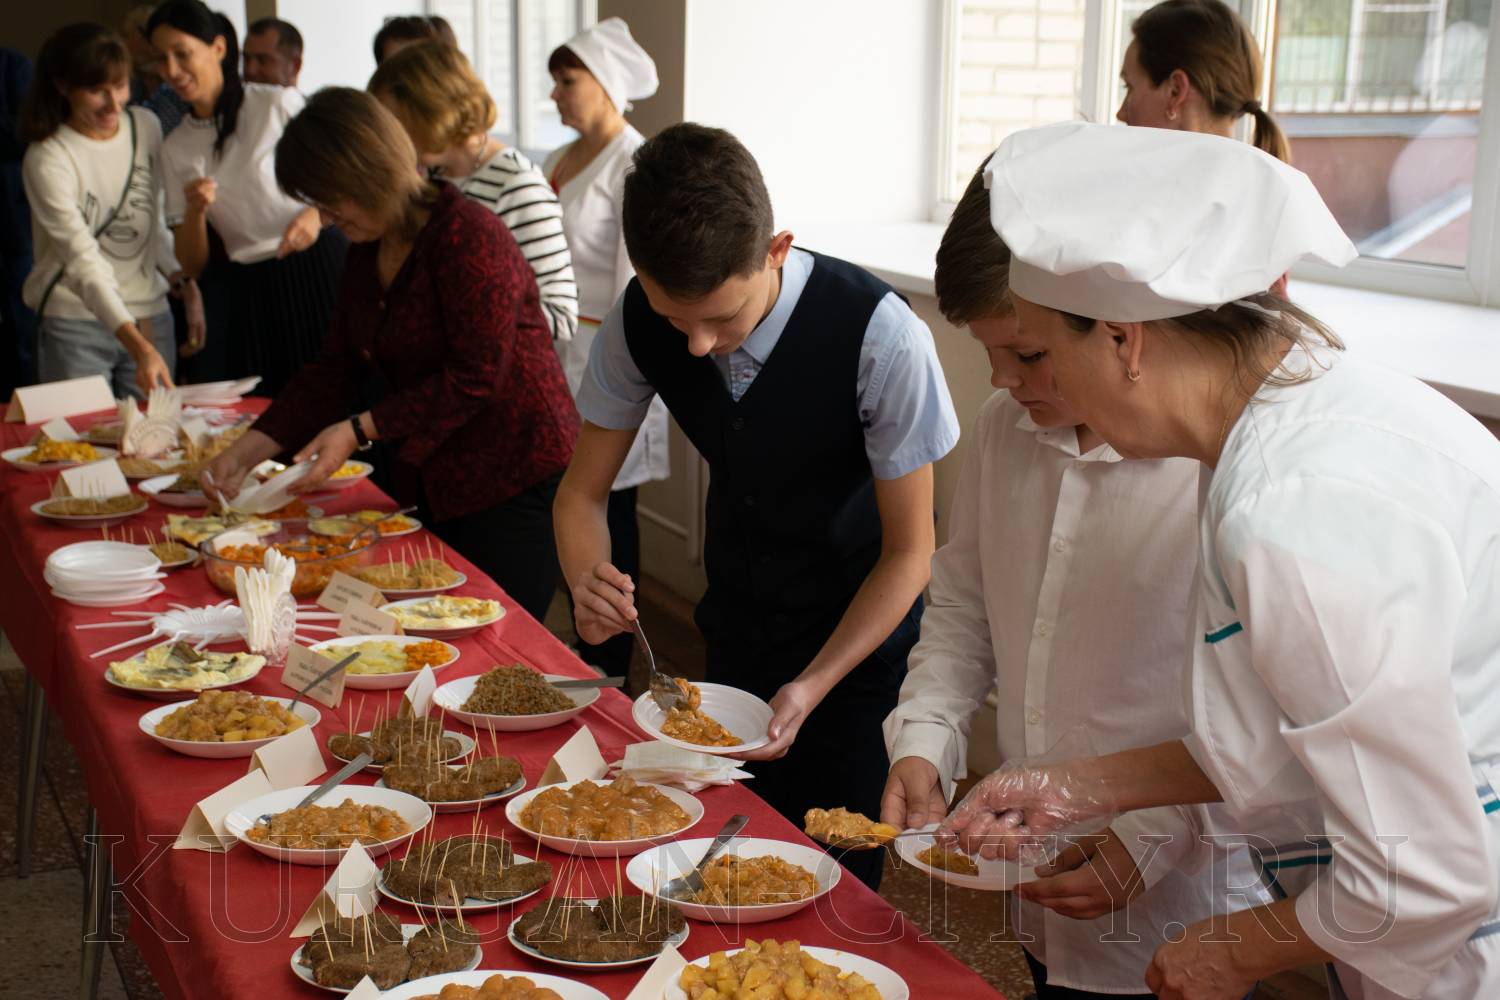 МУП «Комбинат питания» провело презентацию-дегустацию блюд из школьного меню